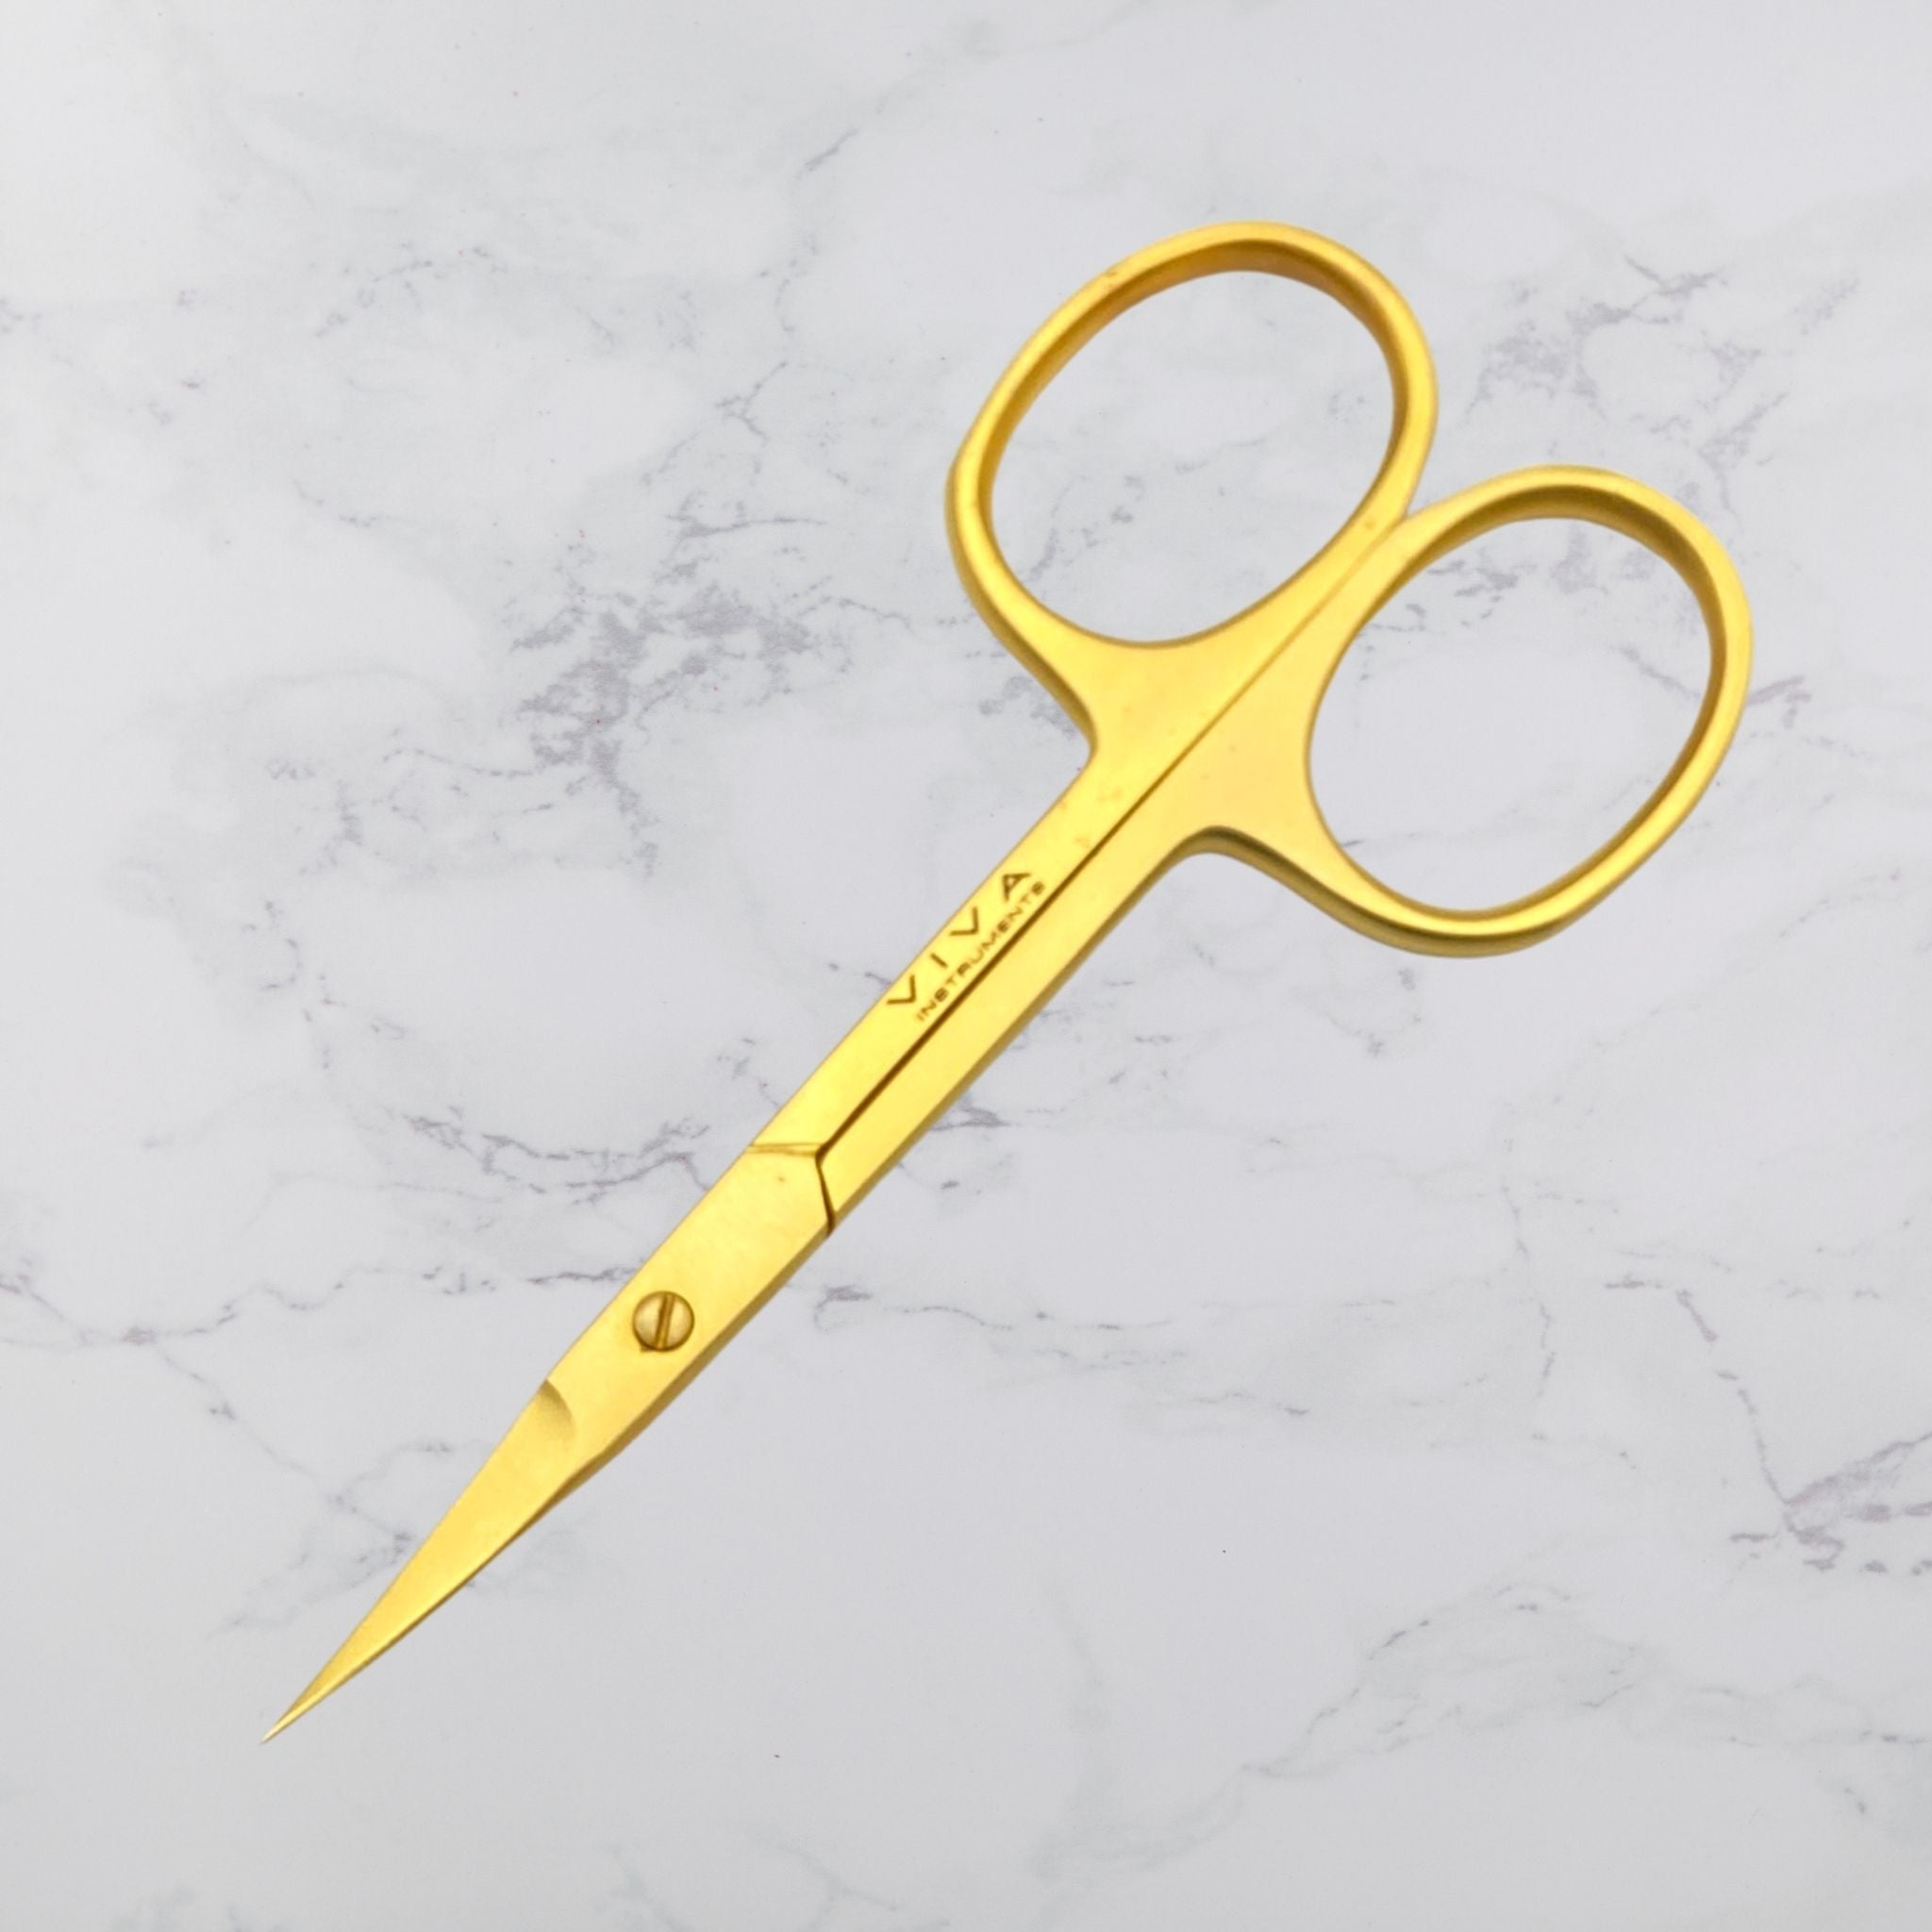 cuticle scissors - viva instruments 